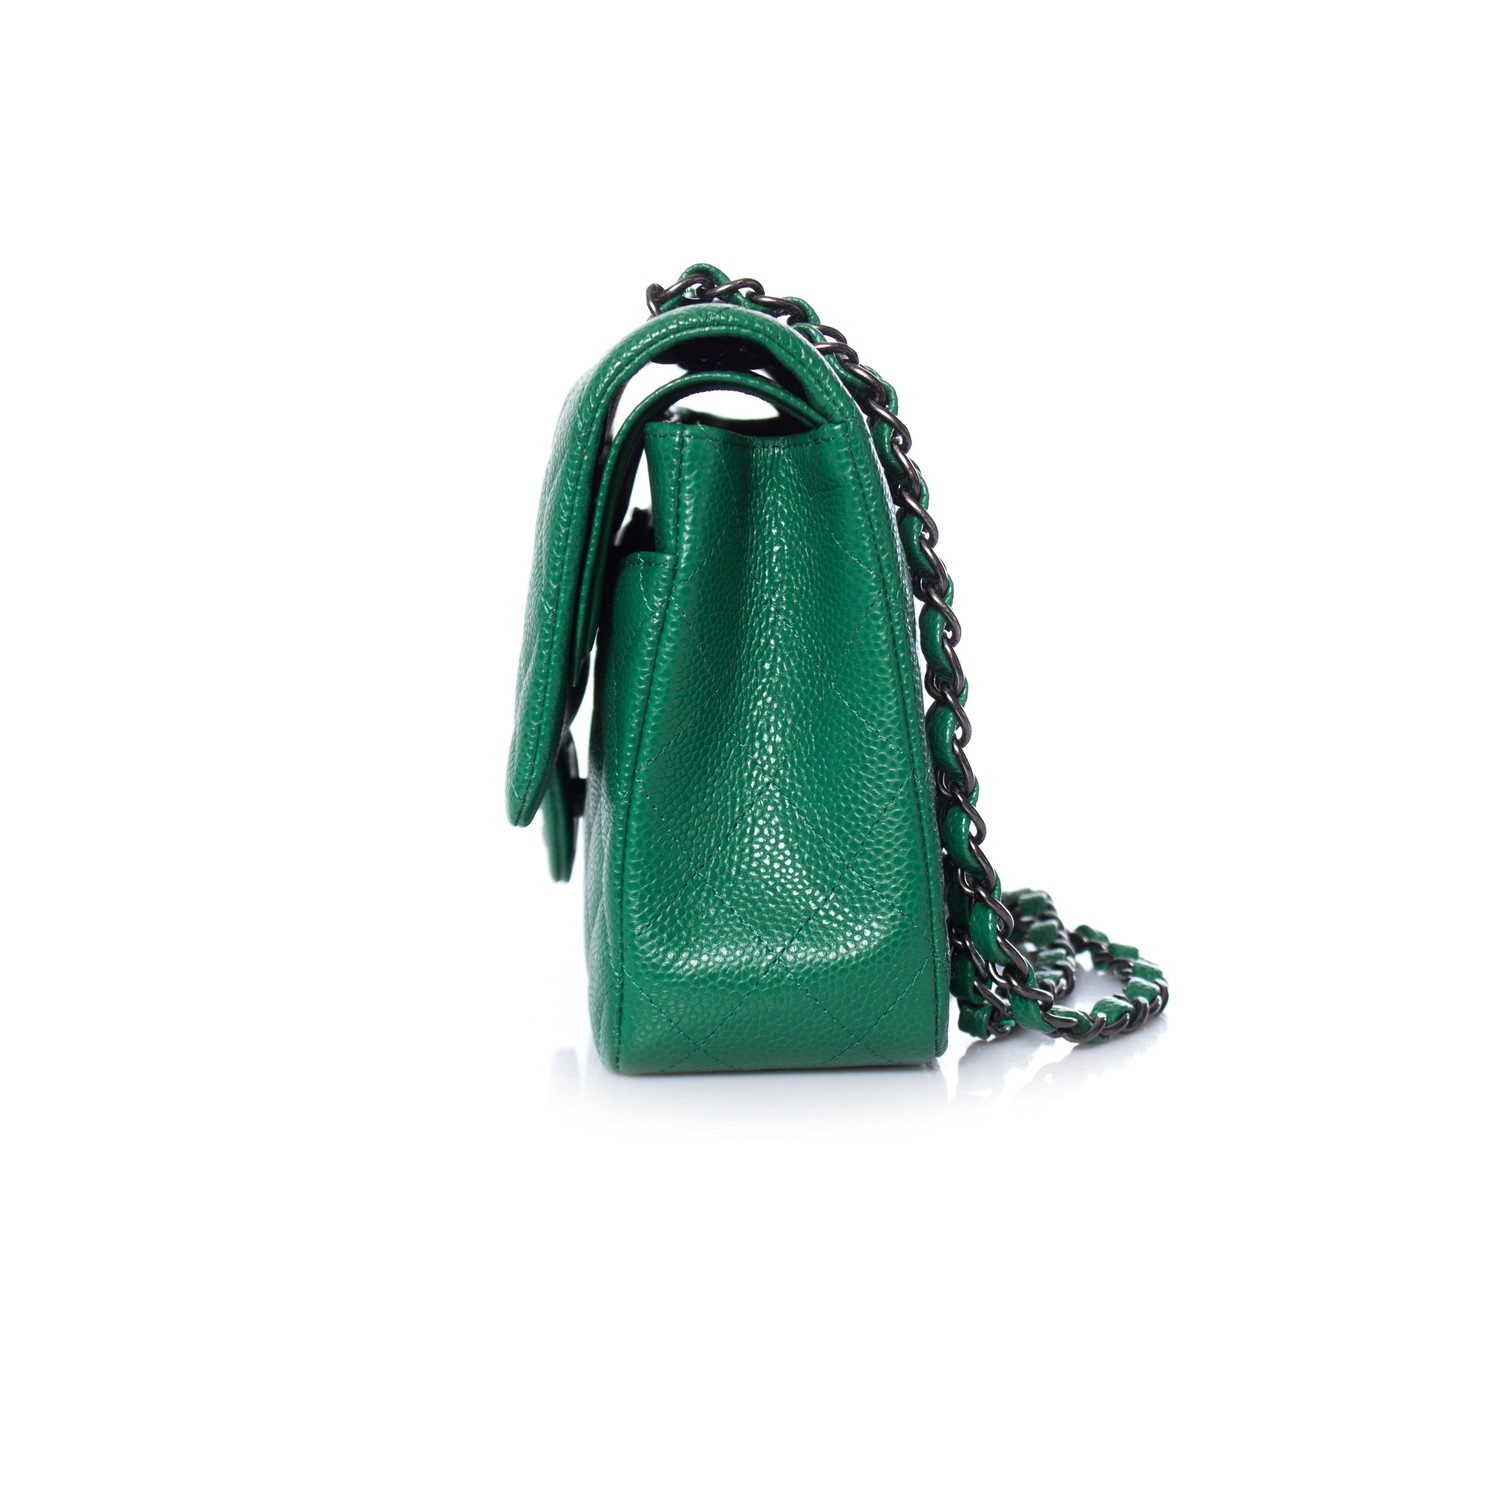 Chanel, Medium timeless flap bag in emerald - Unique Designer Pieces